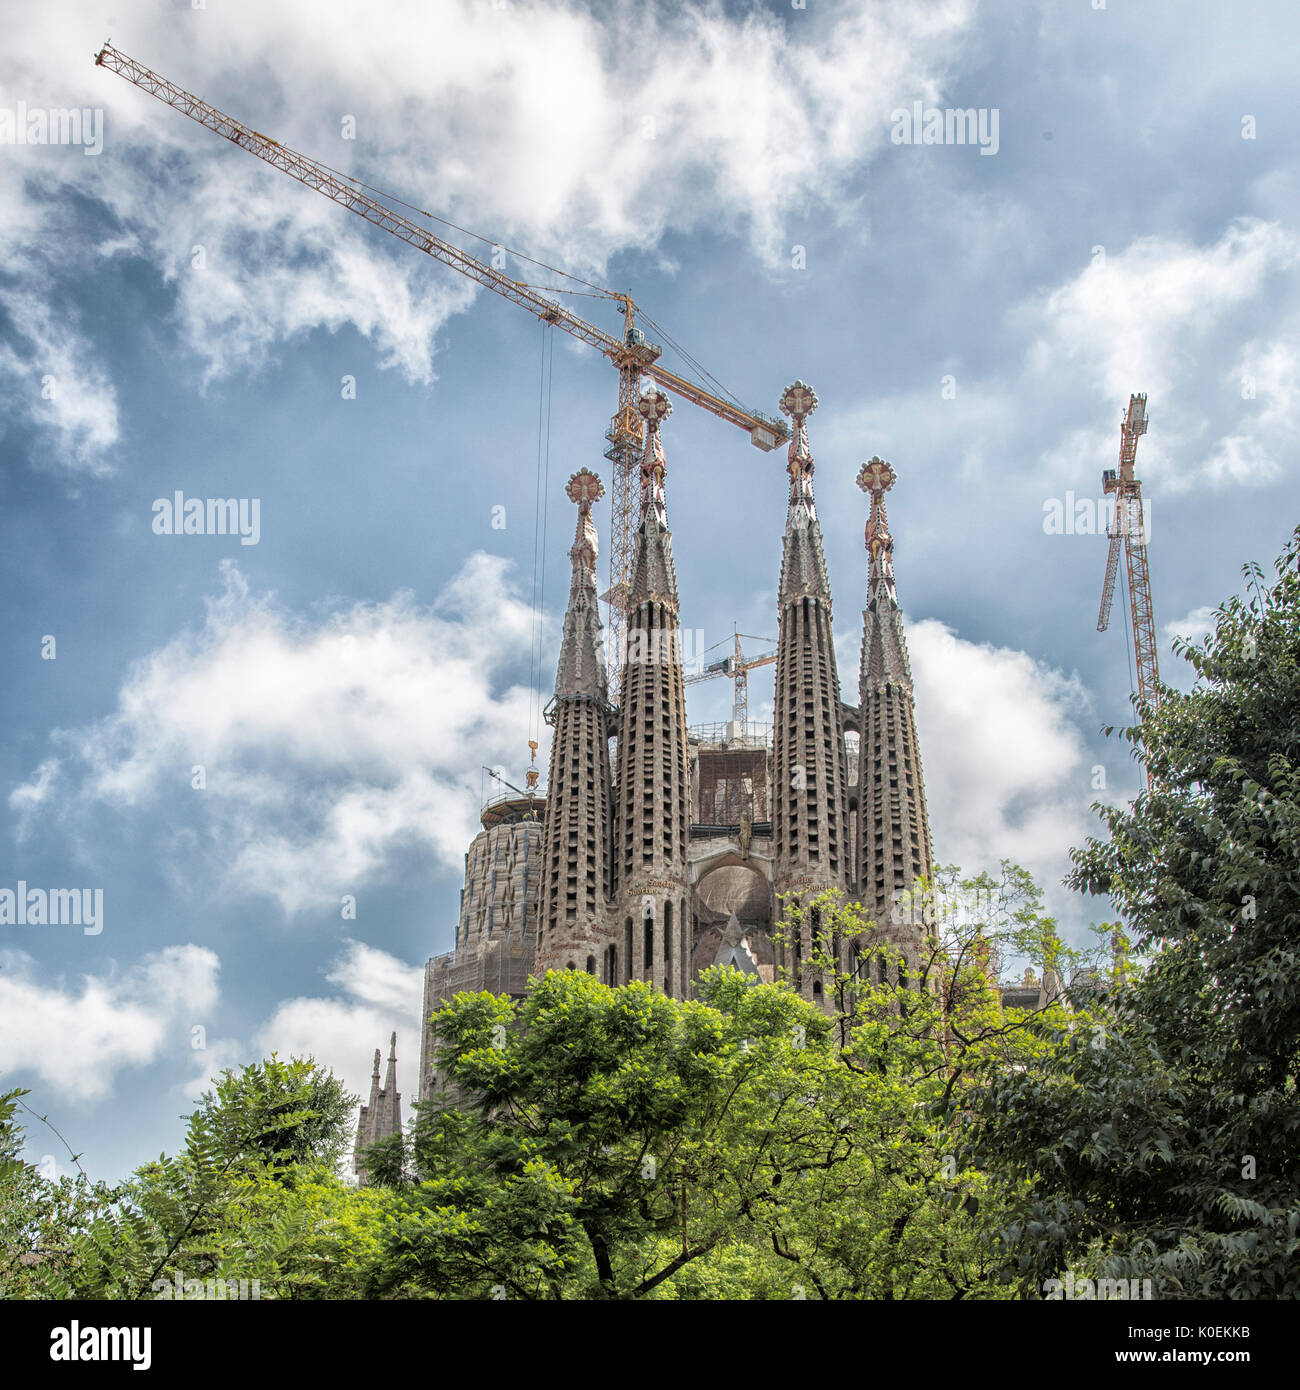 Une vue extérieure de la Basilique de la Sagrada Familia, qui est encore en construction, à Barcelone, Espagne Banque D'Images